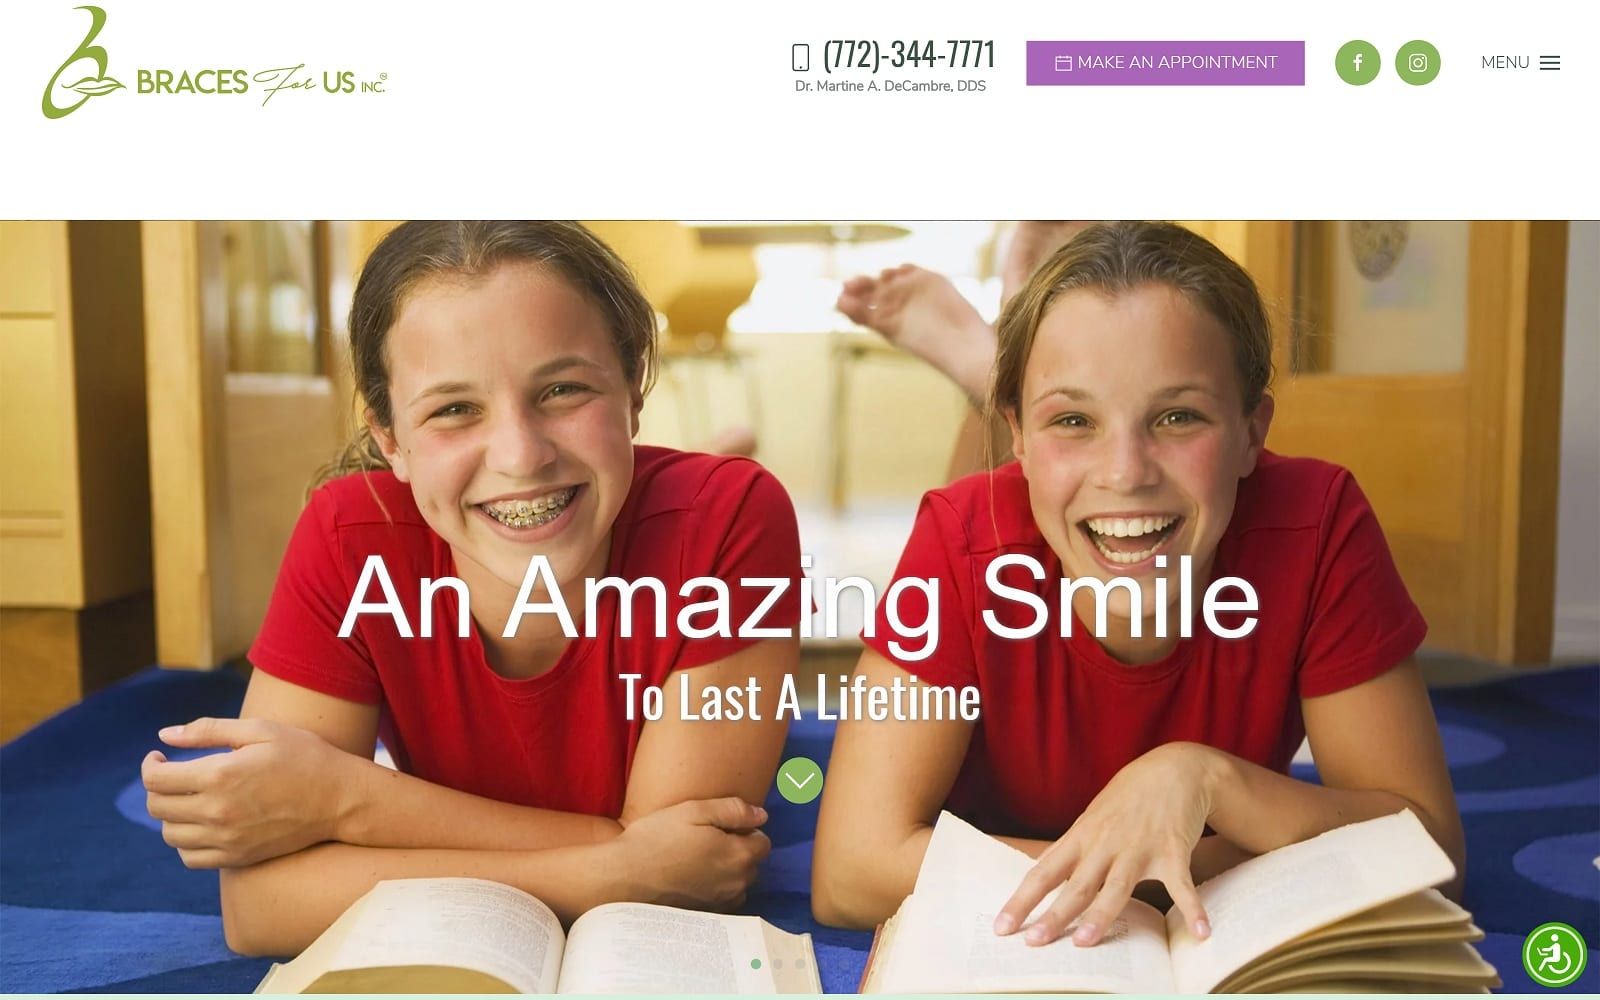 The screenshot of braces for us bracesforus. Com dr. Martine decambre website